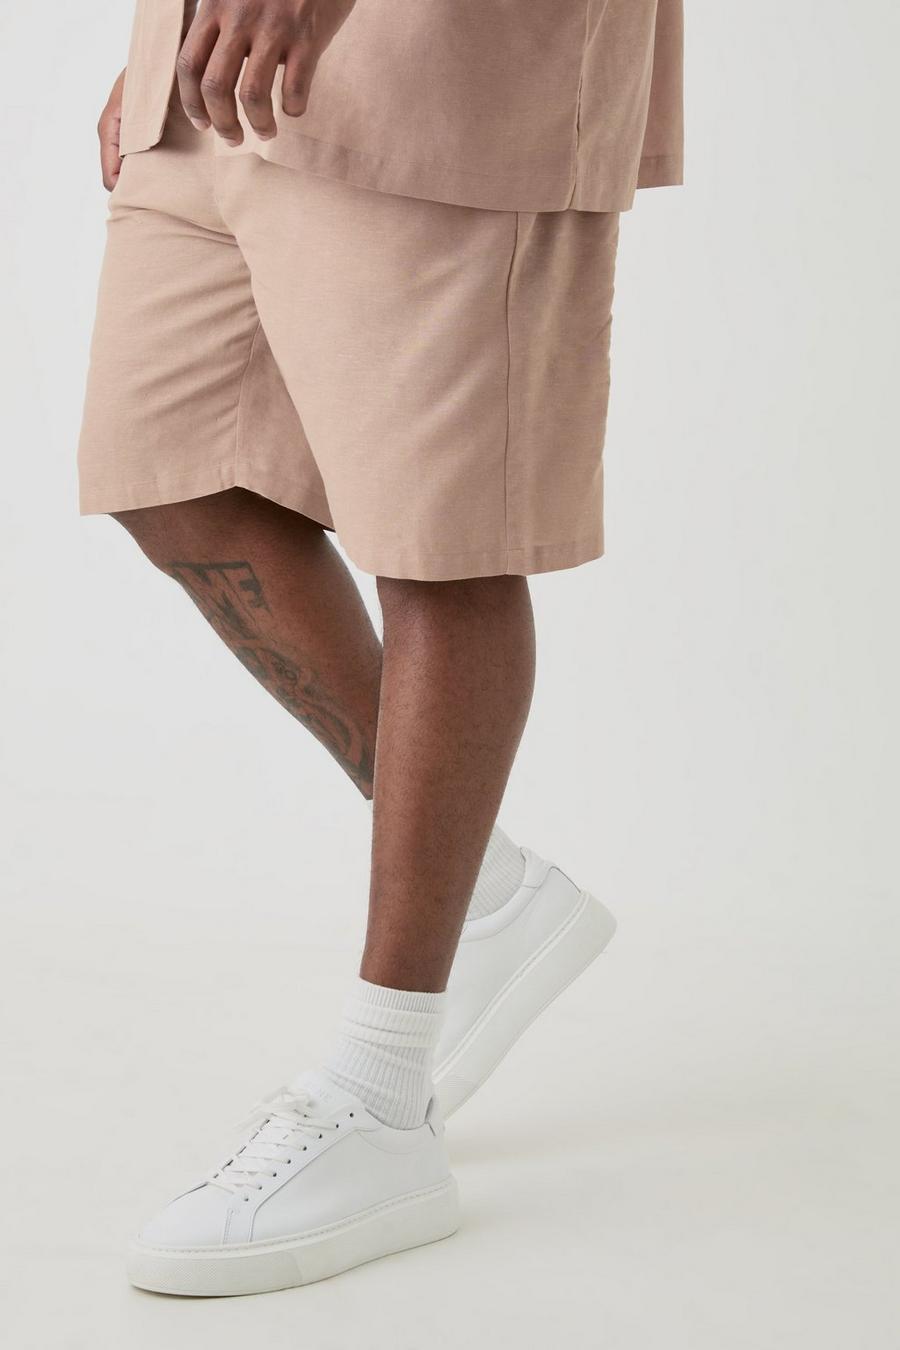 Pantalones cortos Plus de lino con cintura elástica en color topo, Taupe